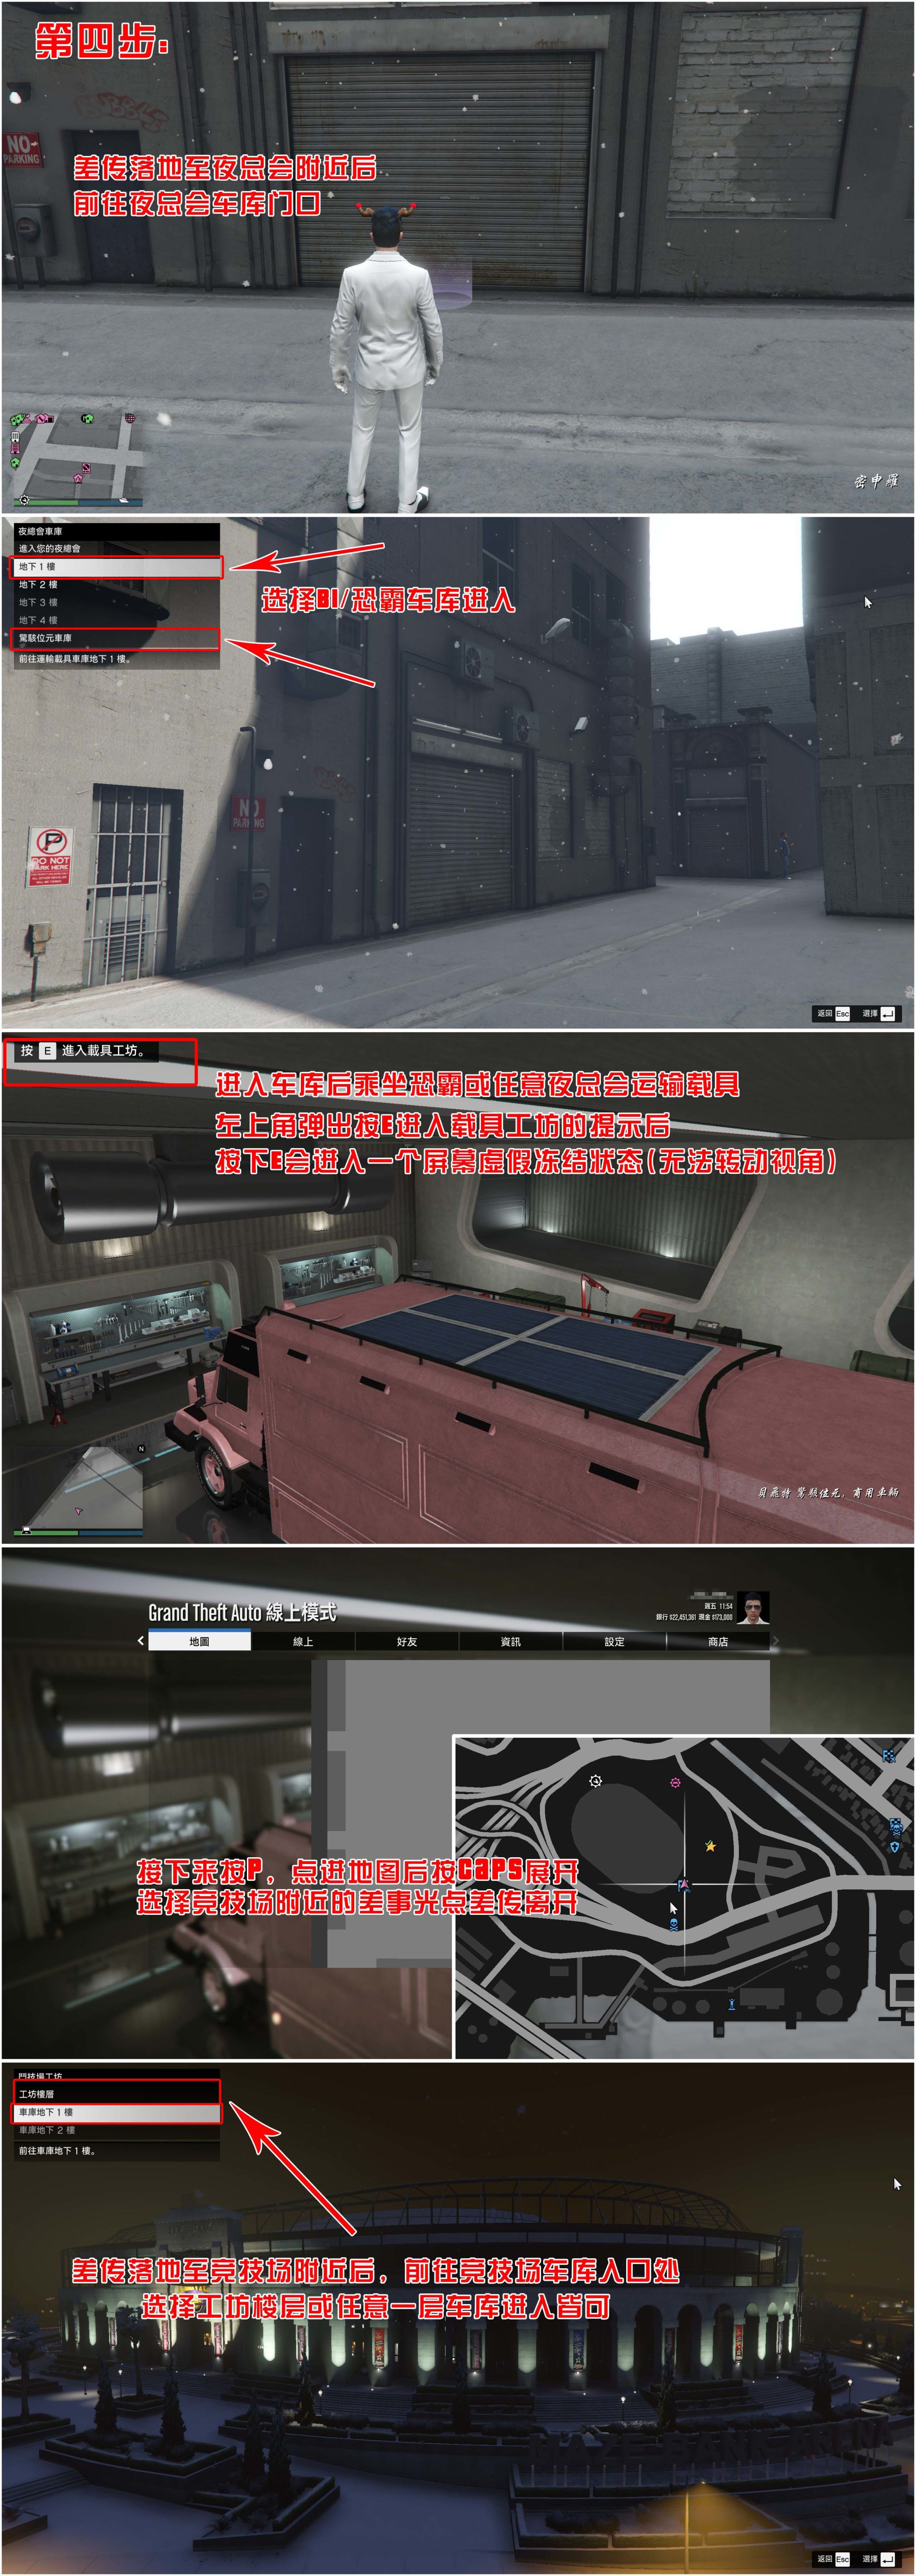 【侠盗猎车手5】GTA 在线模式攻略：获取载具隐藏涂装&复制车&变造外贸载具-第4张